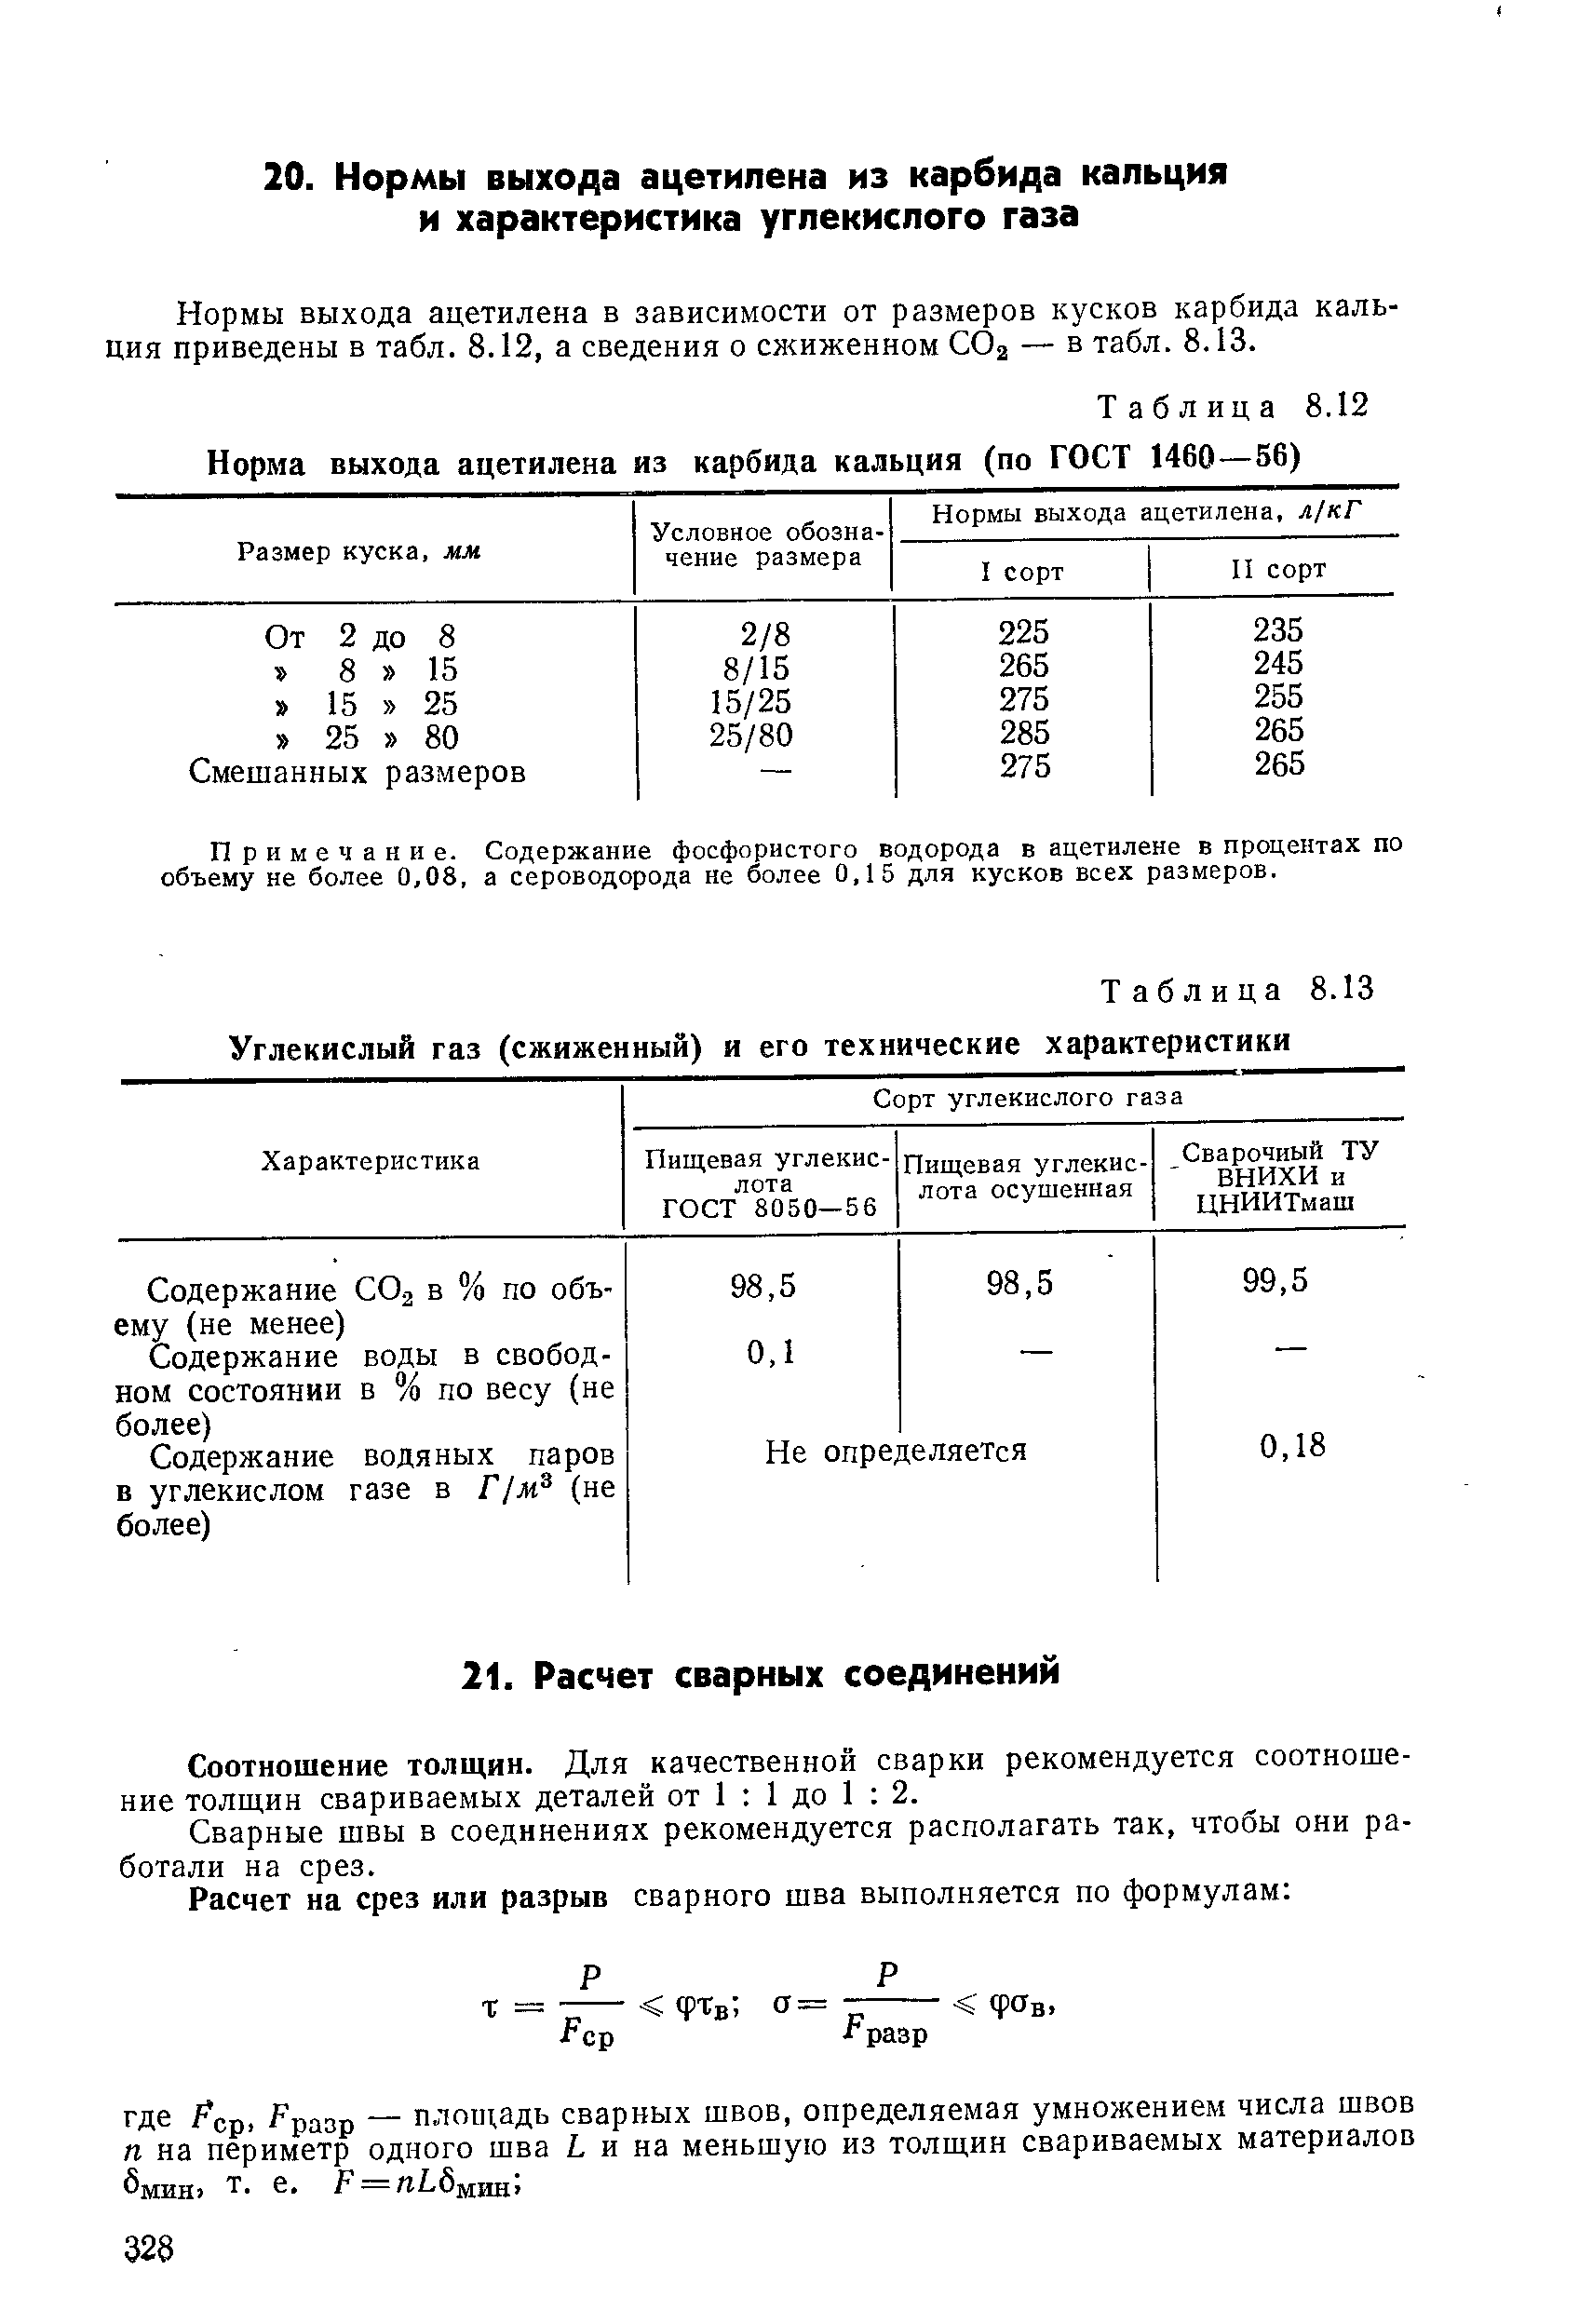 Таблица 8.13 Углекислый газ (сжиженный) и его технические характеристики
